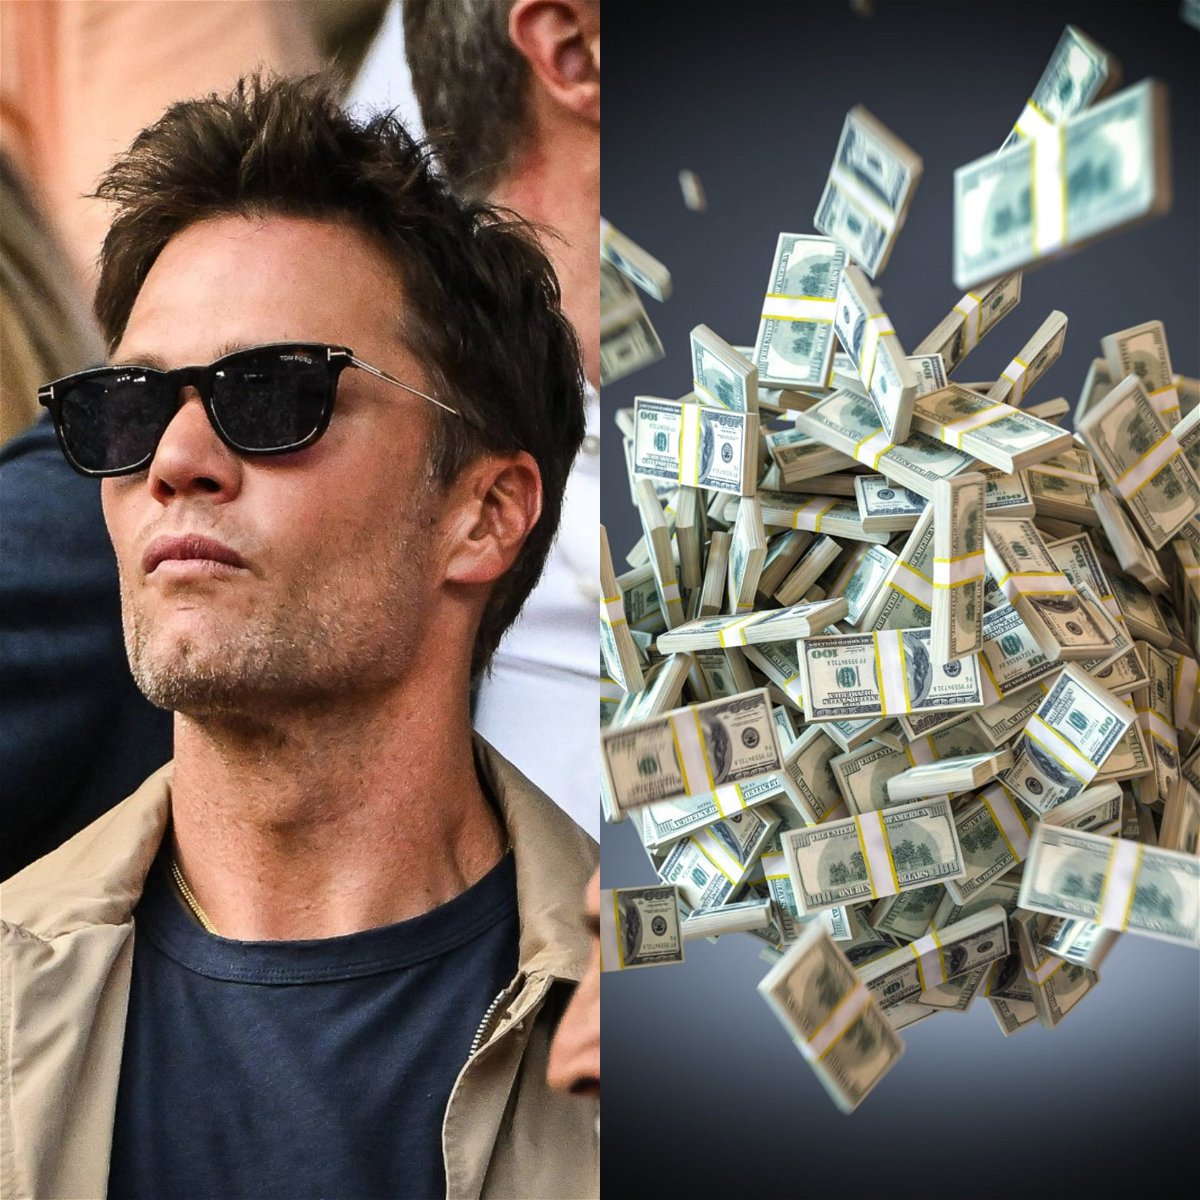 Le millionnaire Tom Brady pourrait viser une chaise d'élite de 600 millions de dollars, malgré une perte de confiance de 32 milliards de dollars